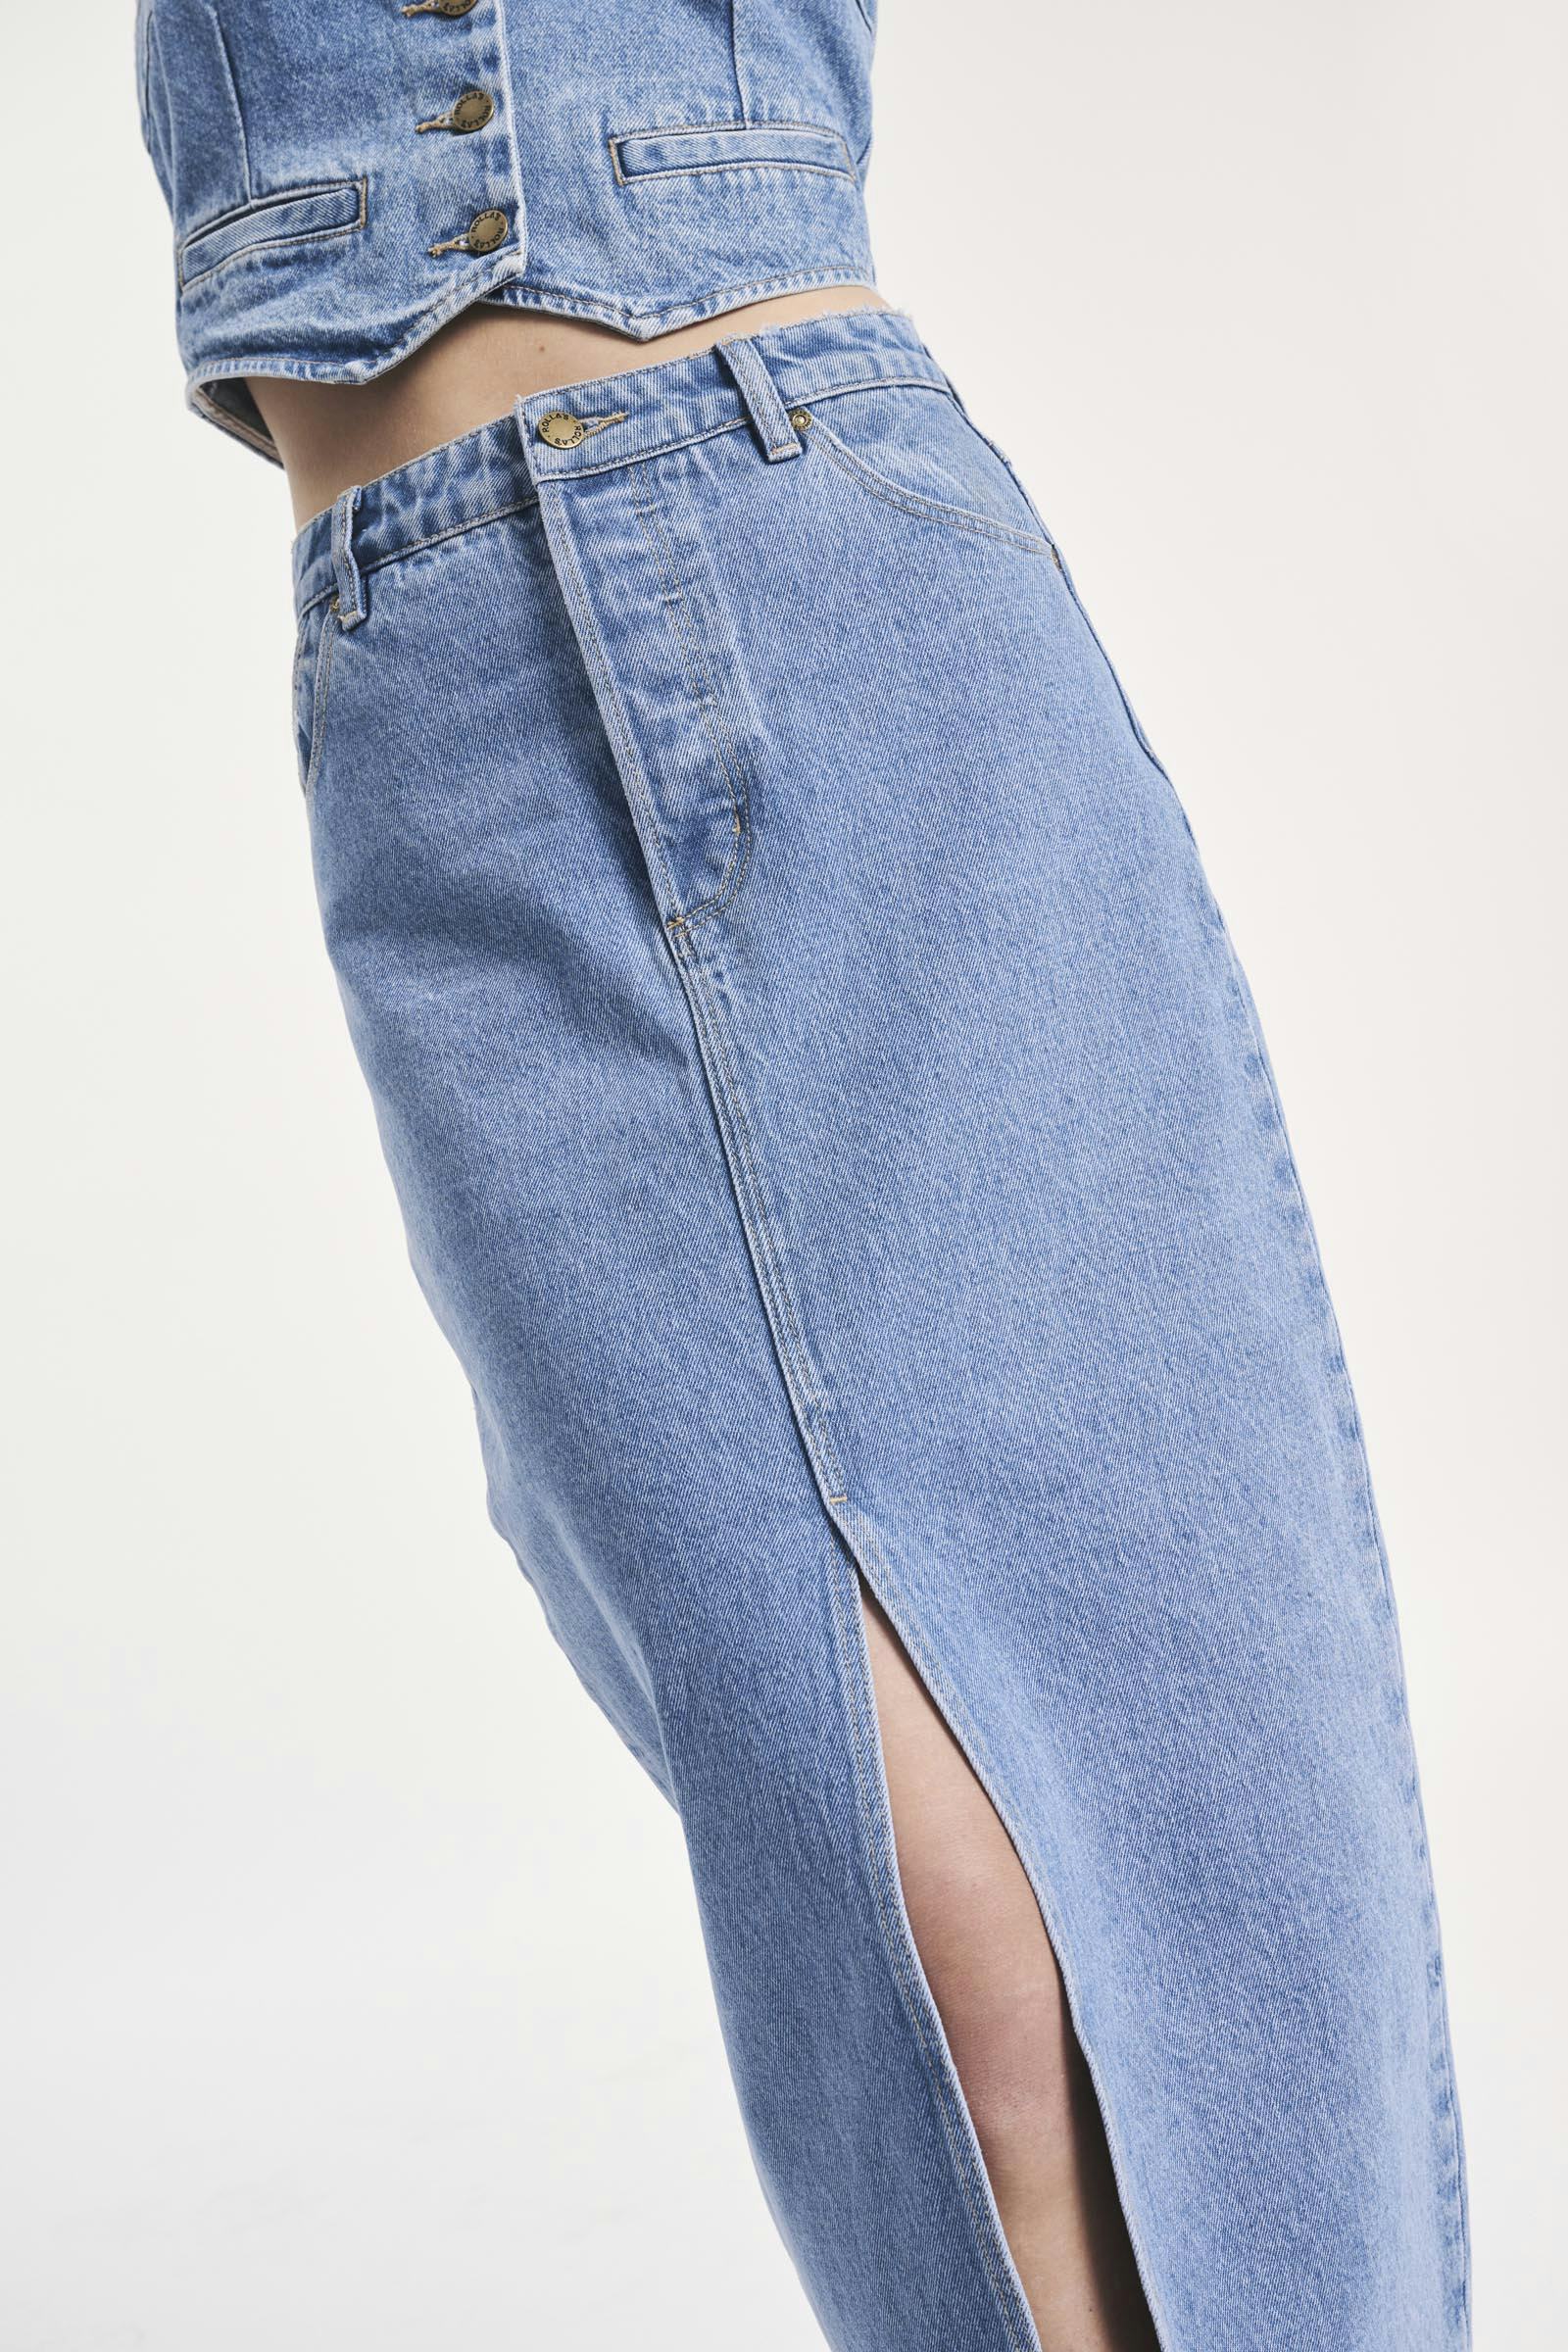 Buy Chicago Skirt - Chloe Online | Rollas Jeans